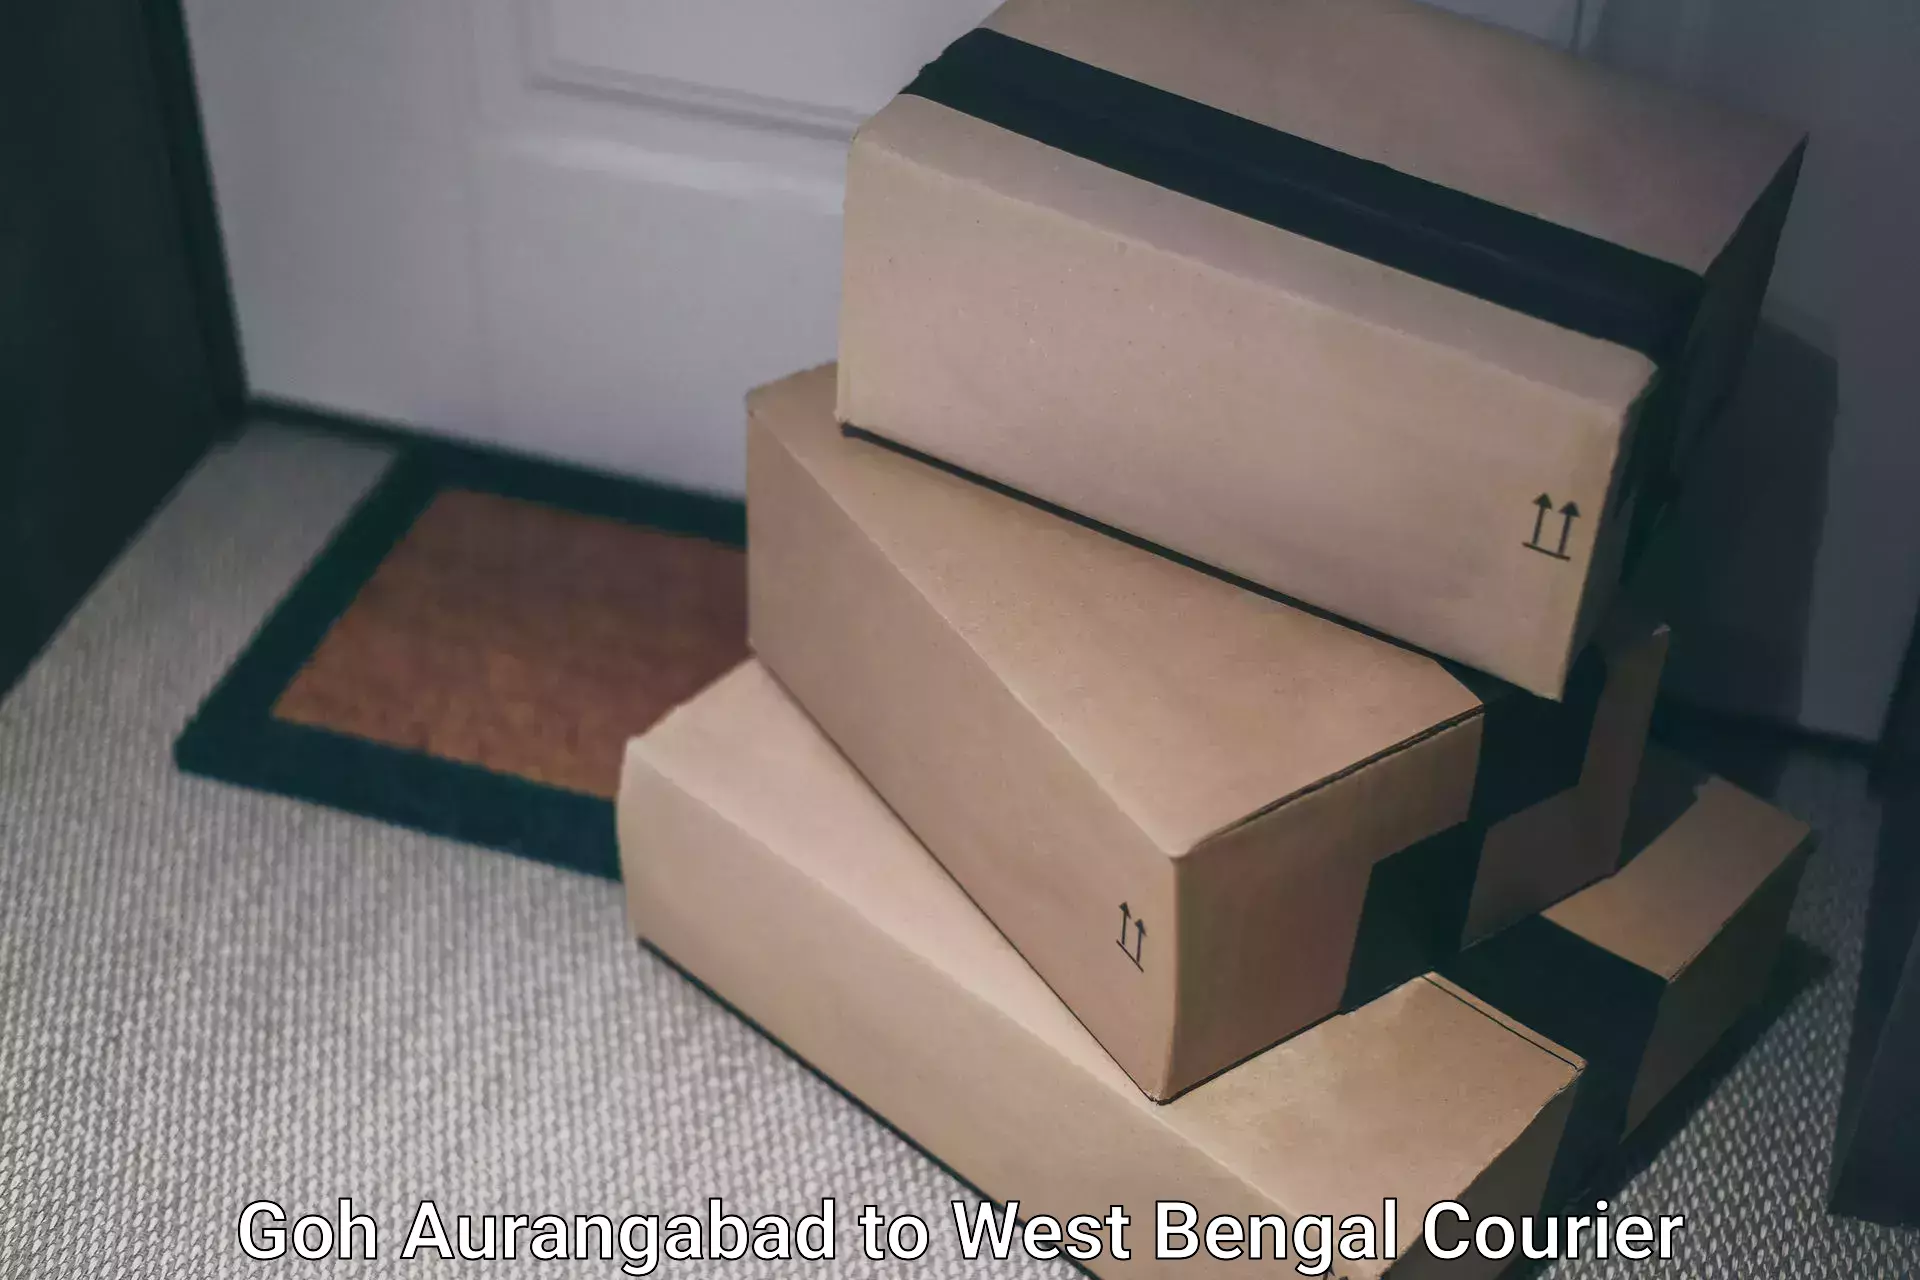 Premium courier services Goh Aurangabad to West Bengal